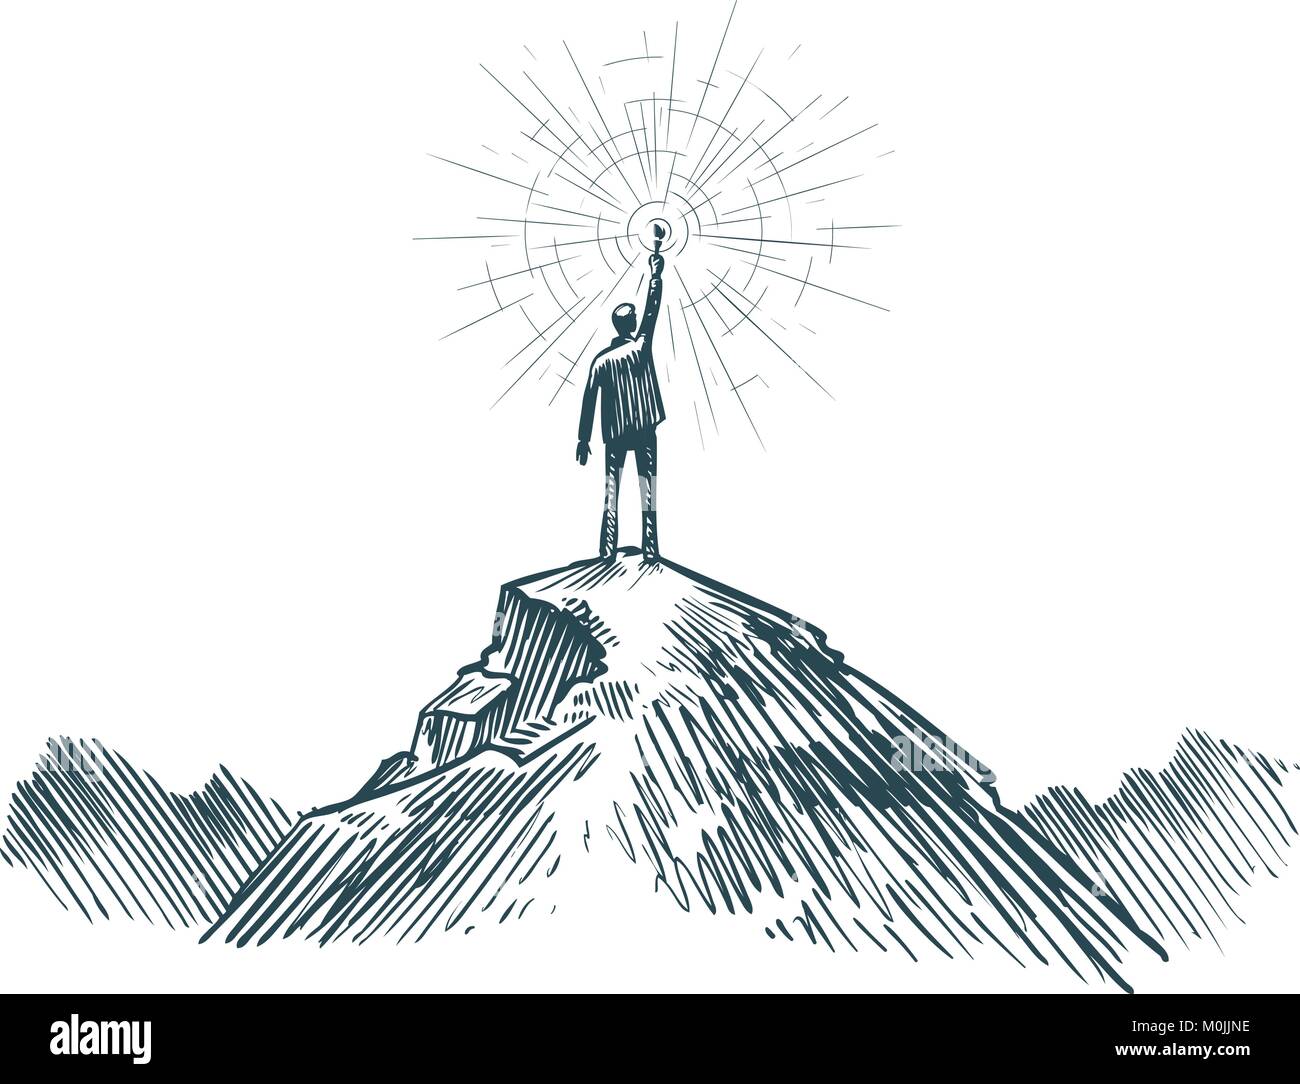 Man steht oben am Berg mit einer Fackel in der Hand. Business, wenn das Ziel, Erfolg, Discovery Konzept. Skizze Vector Illustration Stock Vektor